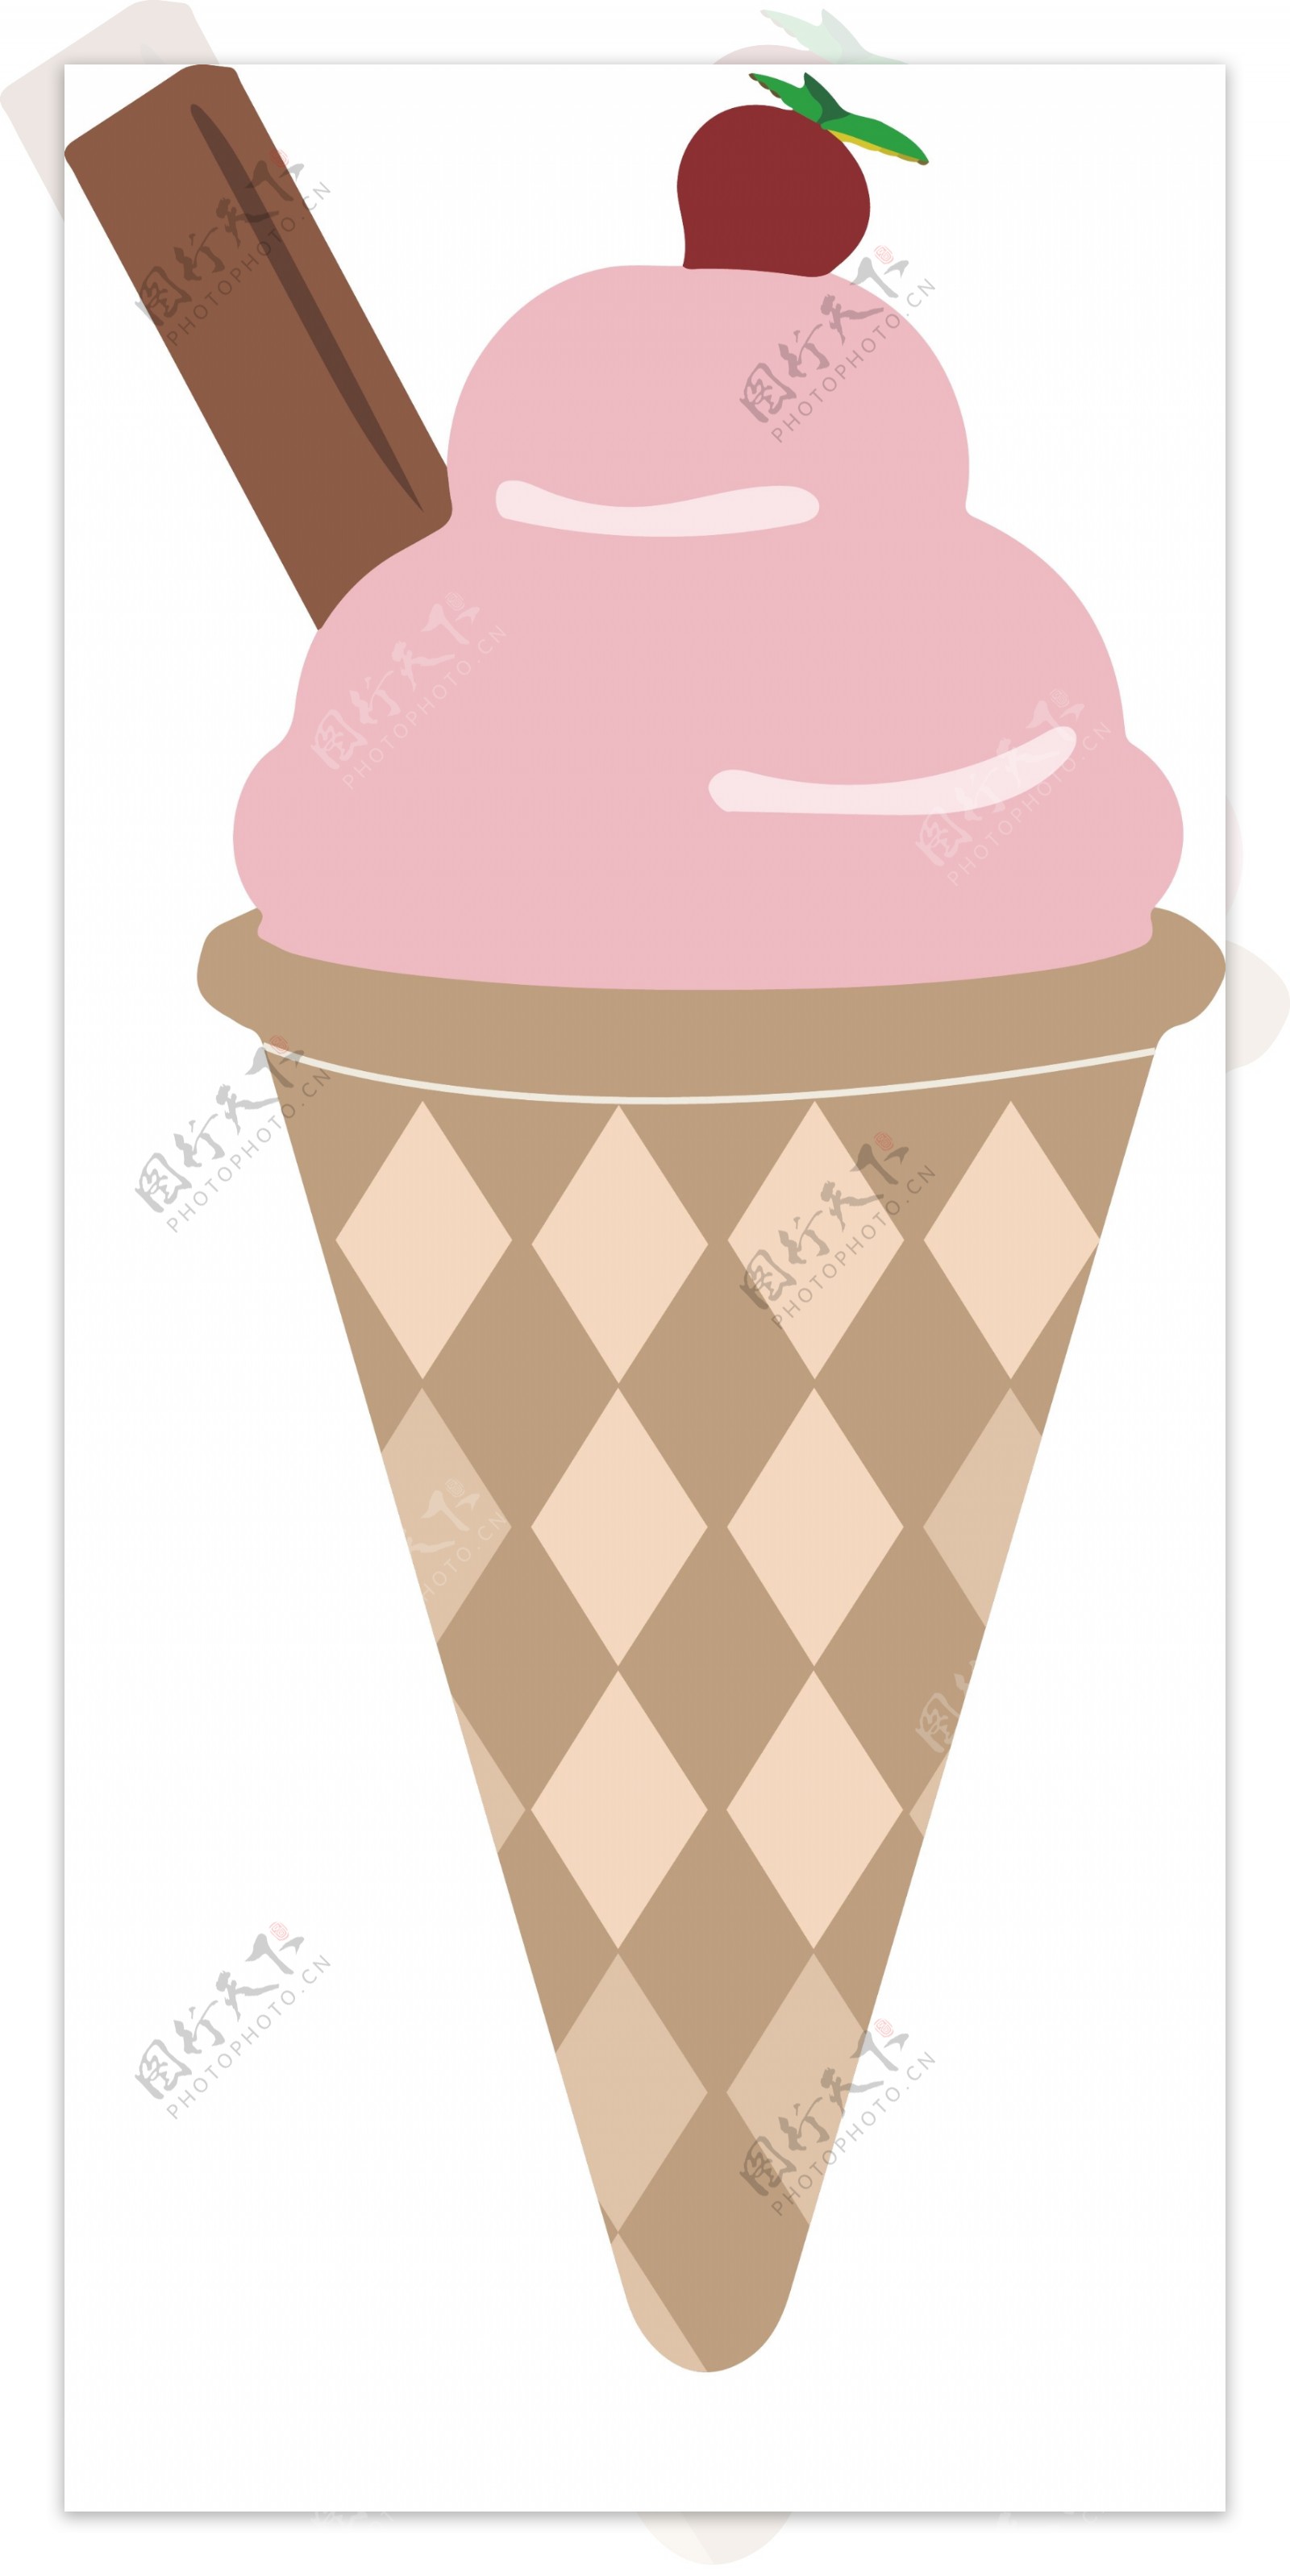 零食小吃冰淇淋图形元素